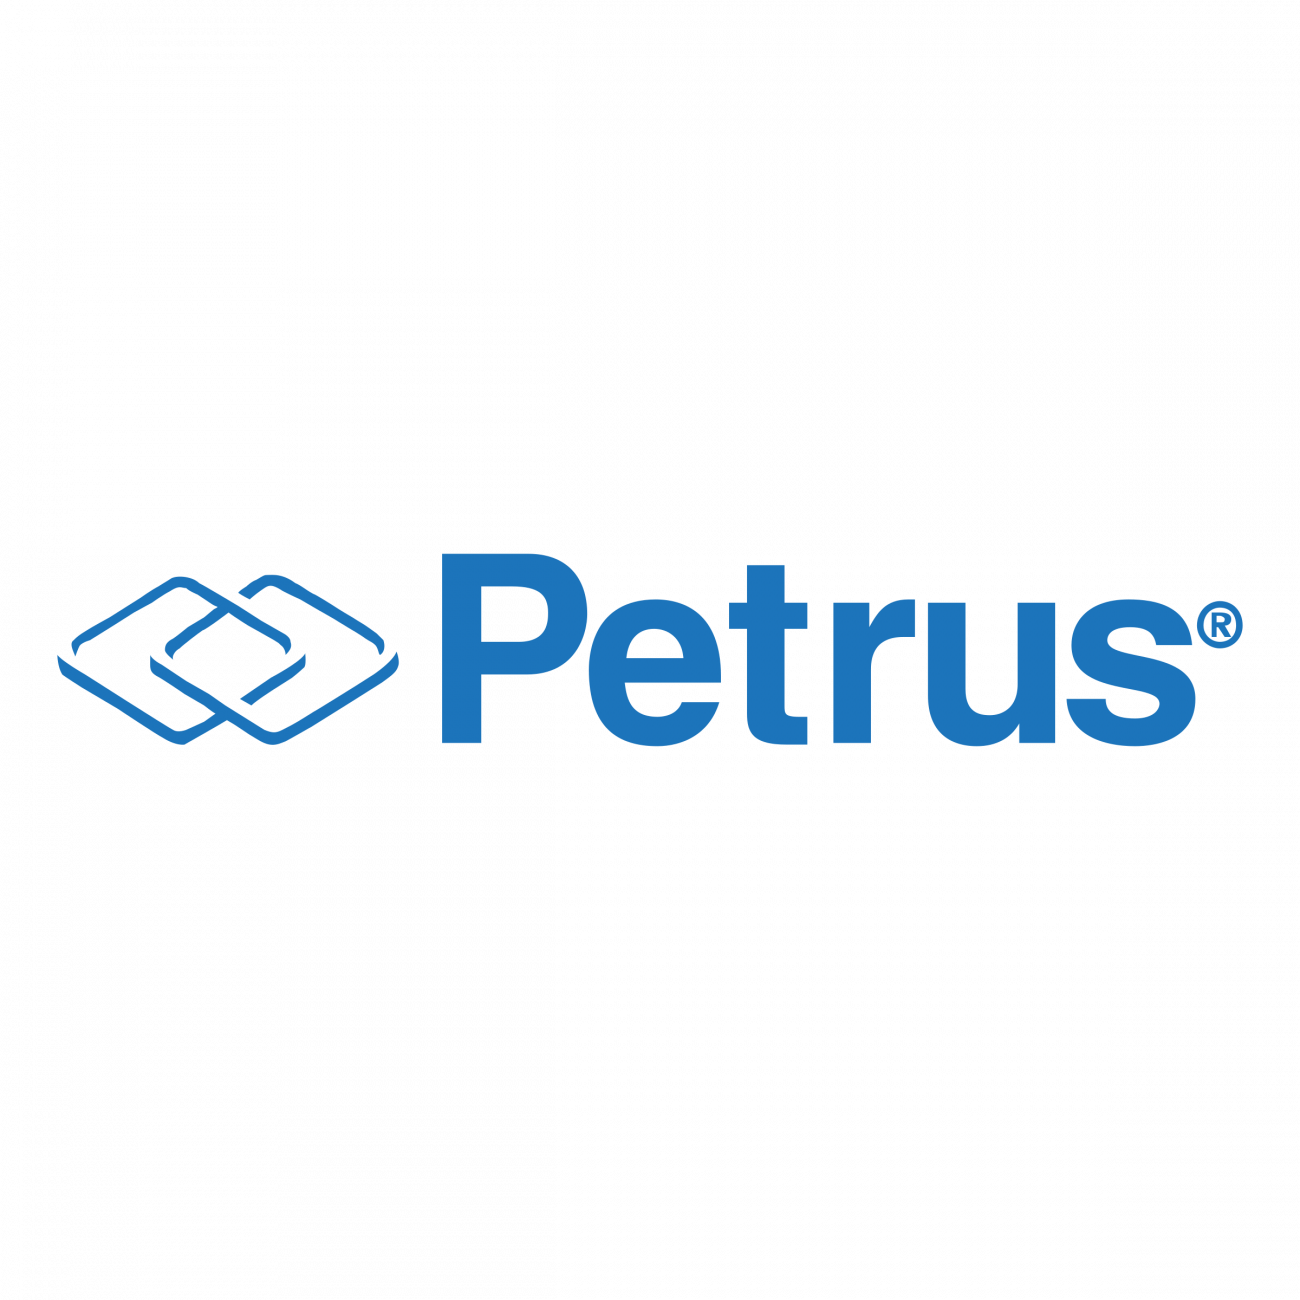 petrus-logo-png-transparent